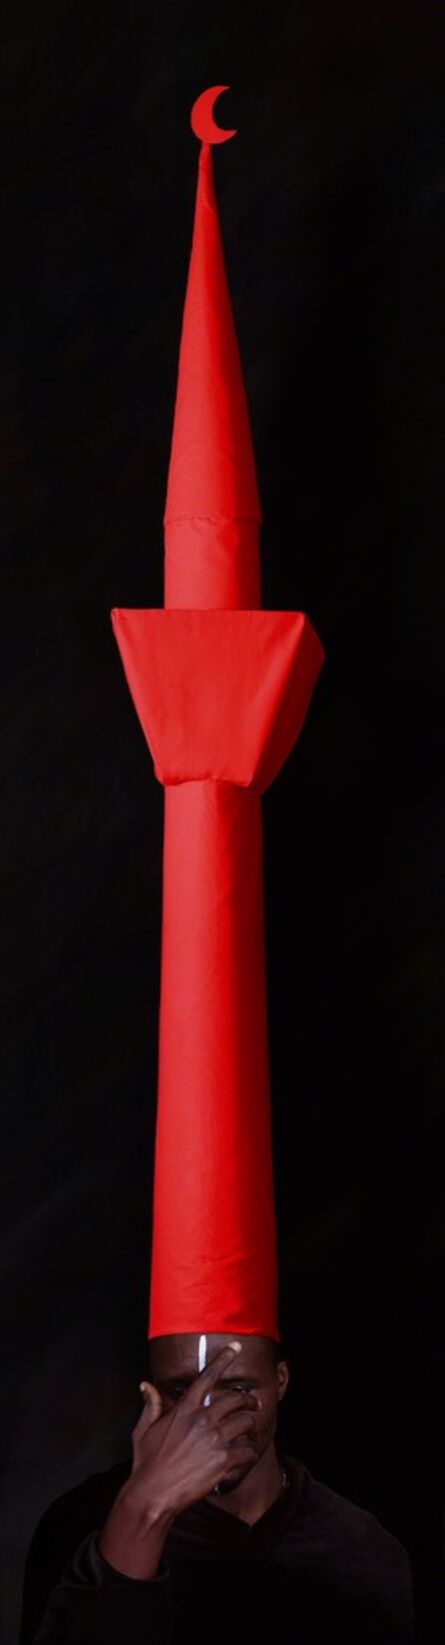 Maïmouna Guerresi, ‘Red Minaret’, 2011